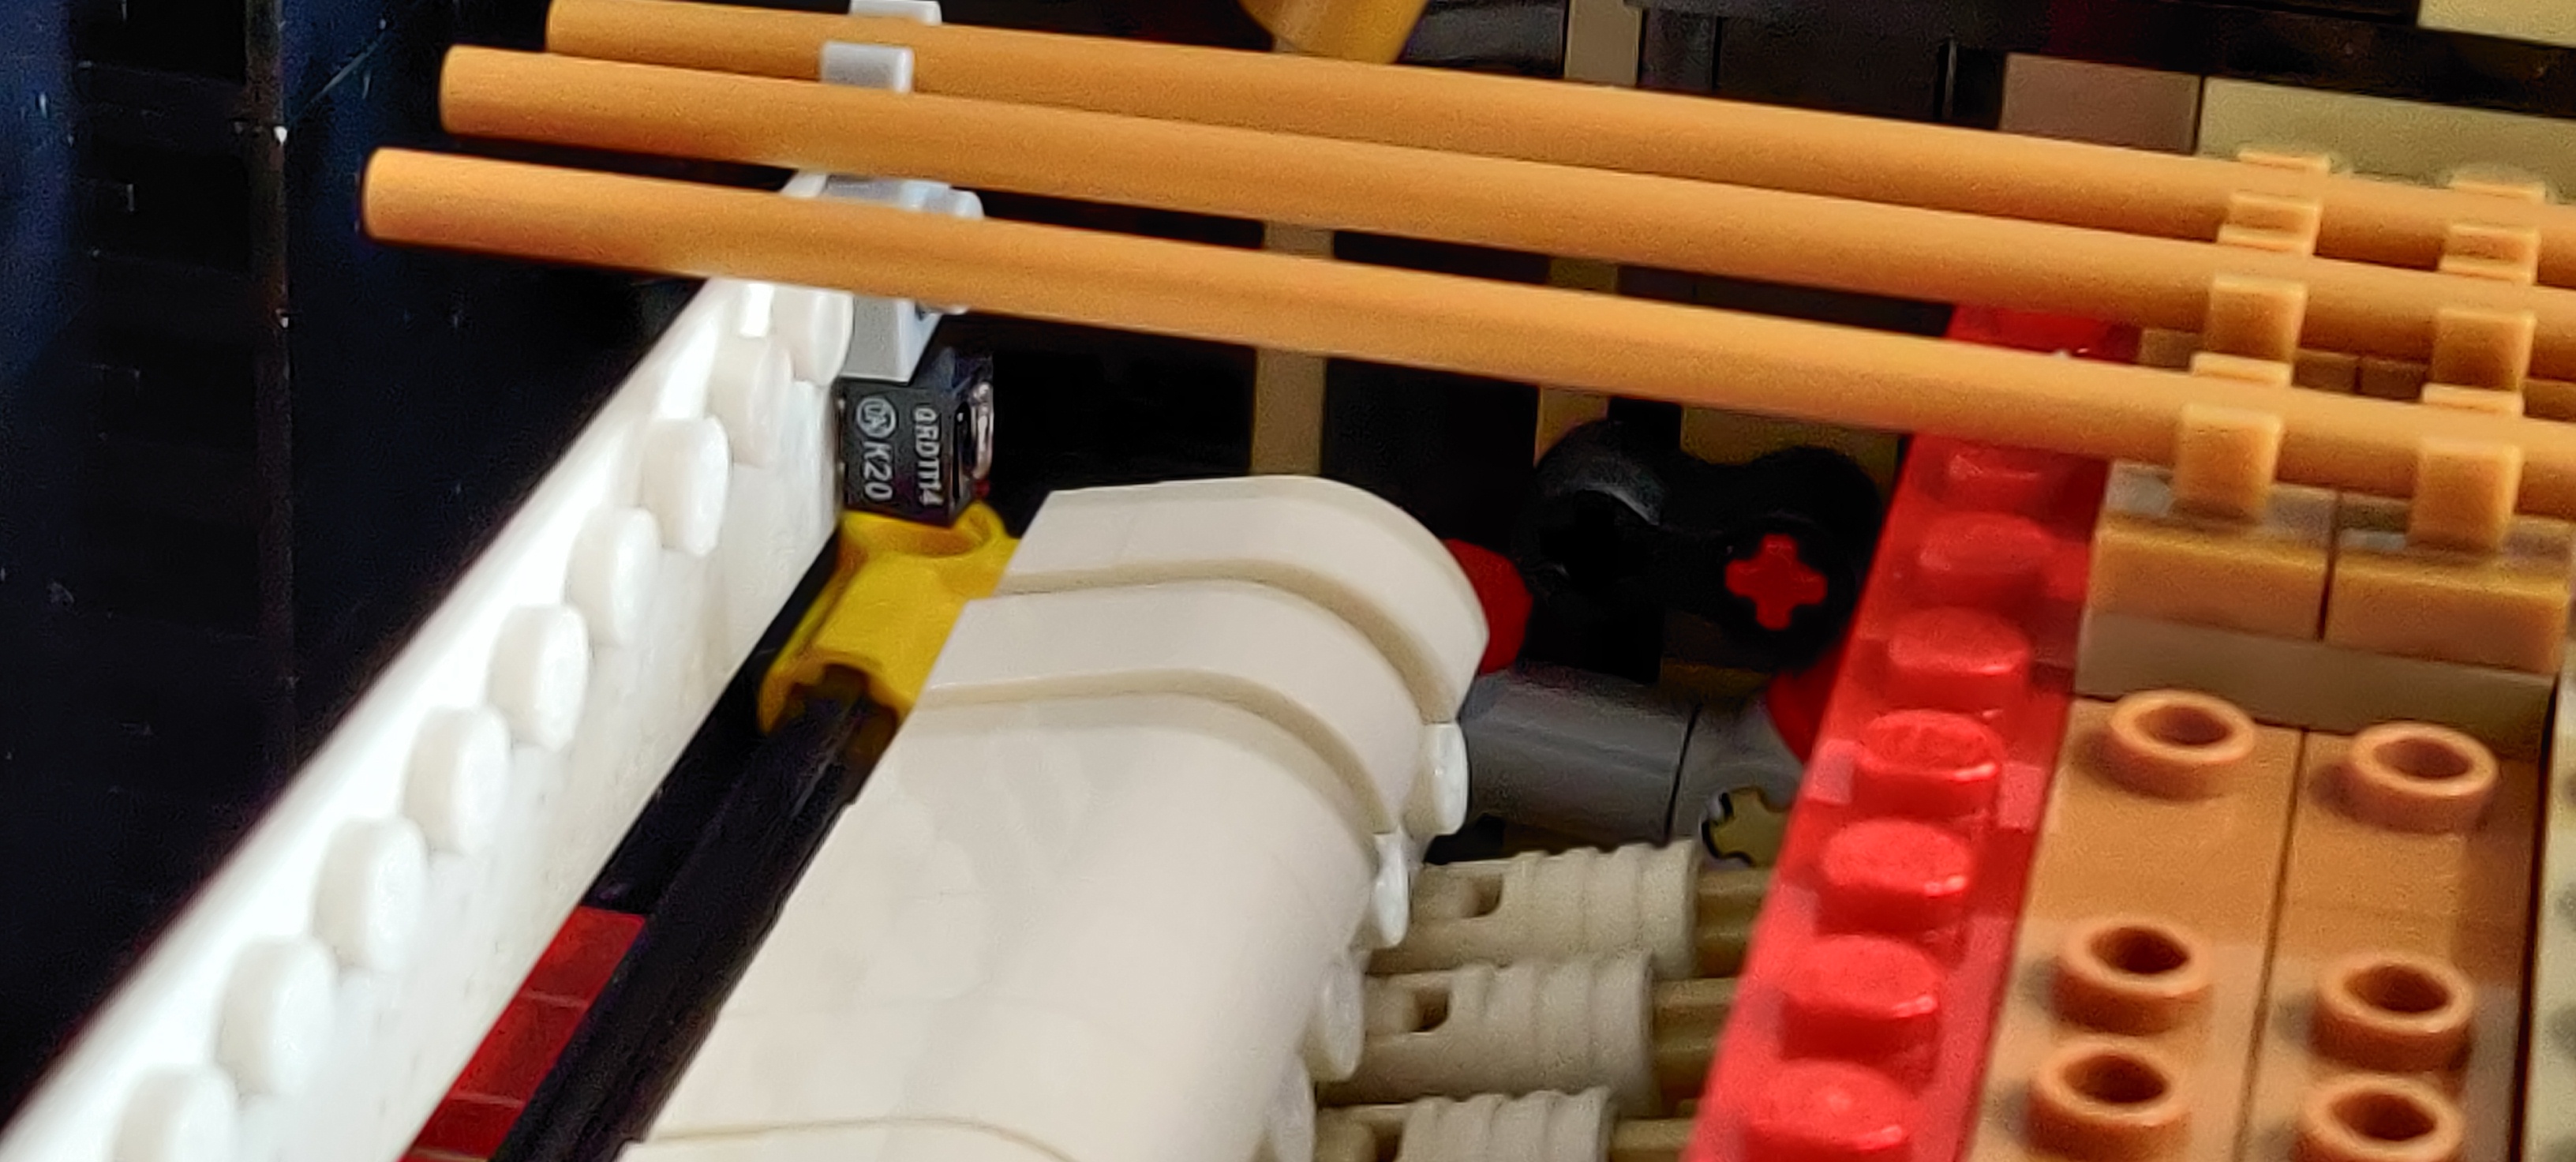 un sensore QRD1114 inserito nel supporto stampato, appeso a
una delle "corde" con una manina Lego; il sensore è appena
sopra e dietro l'ultimo martelletto a destra; il martelletto
è a riposo